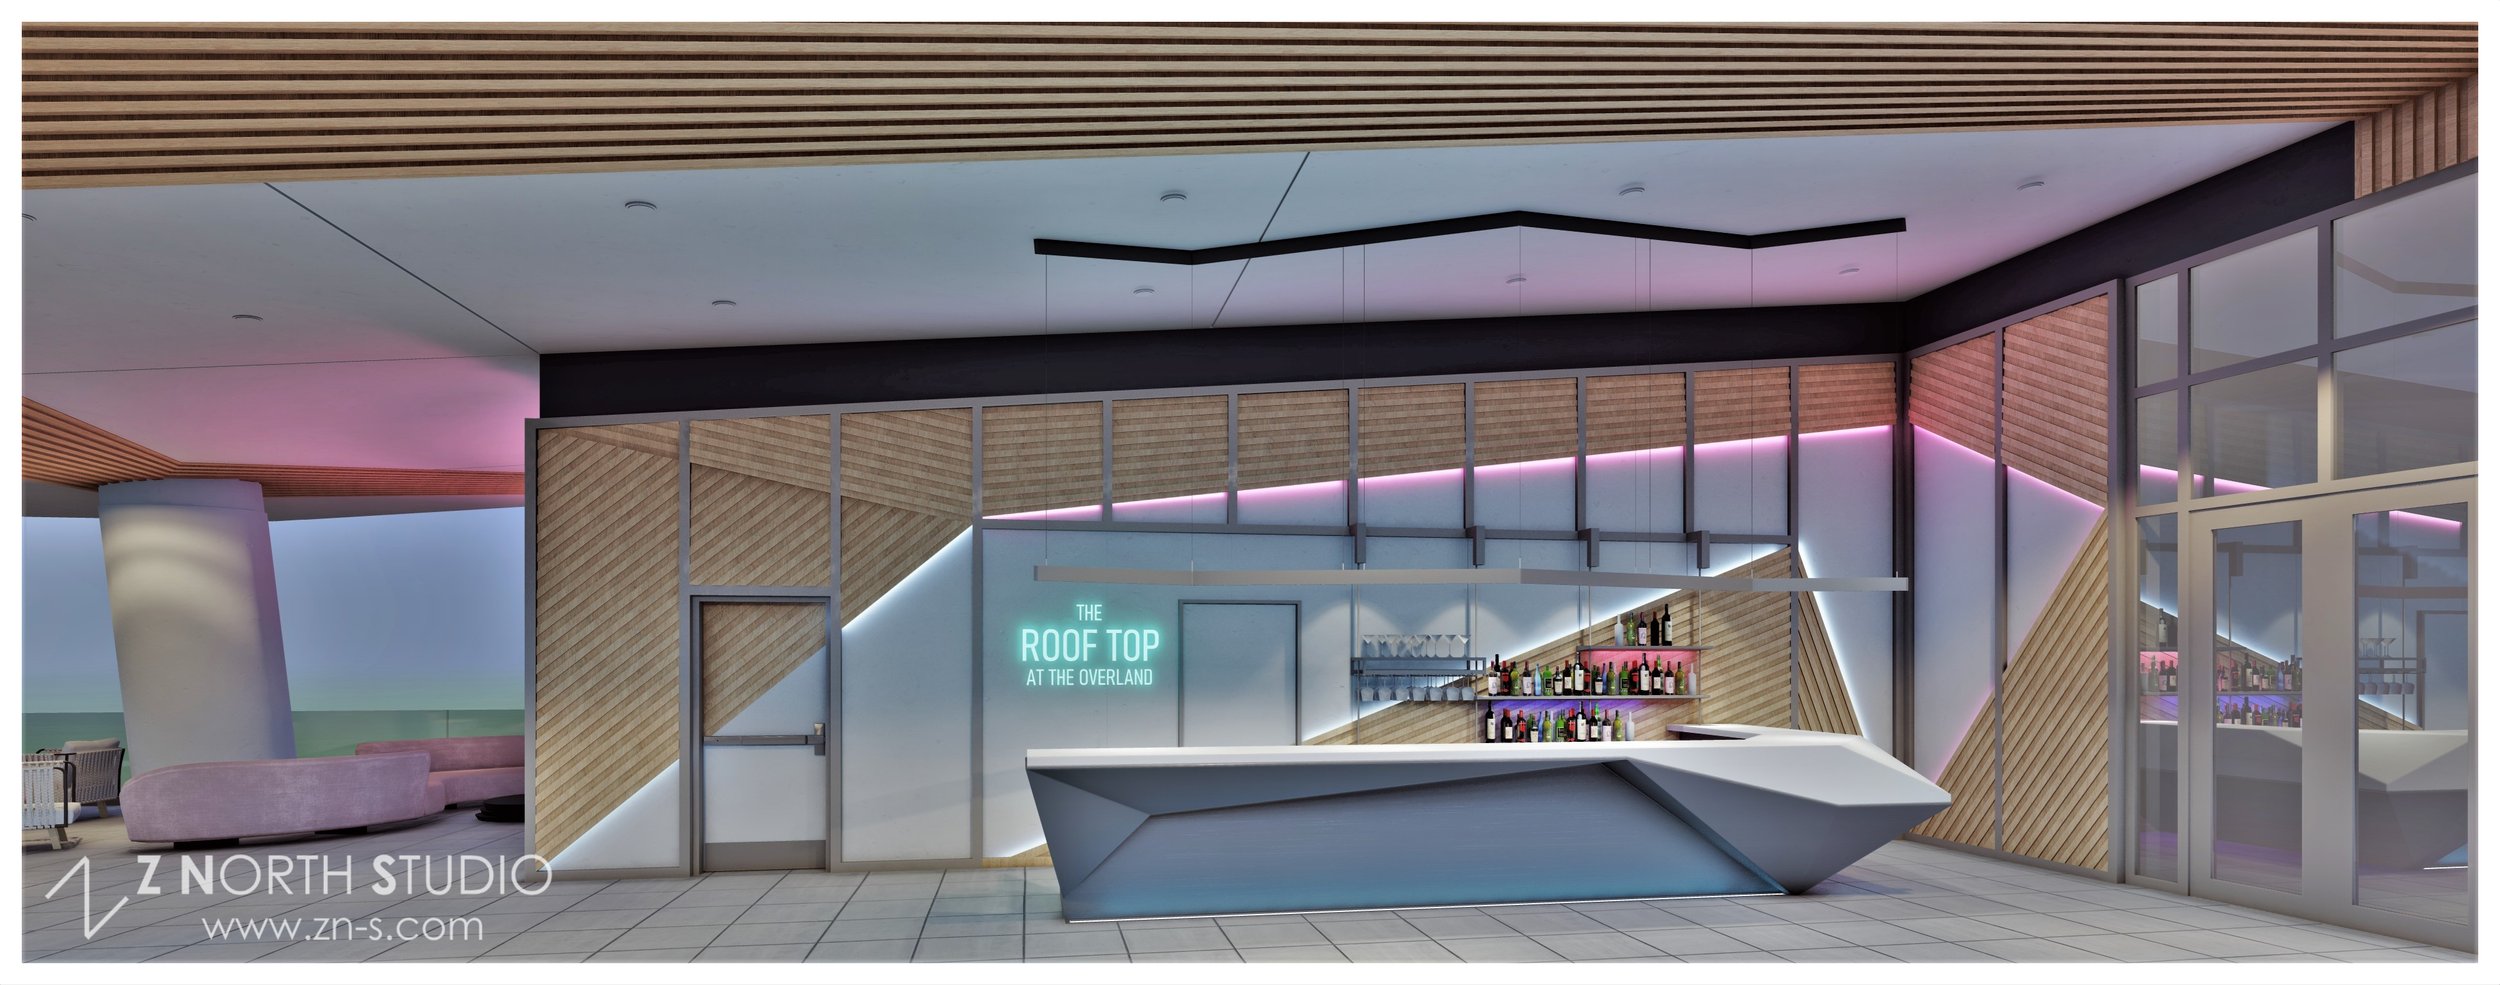 Kimpton Overland Hotel Rooftop Interior Design 3D Rendering (7).jpg